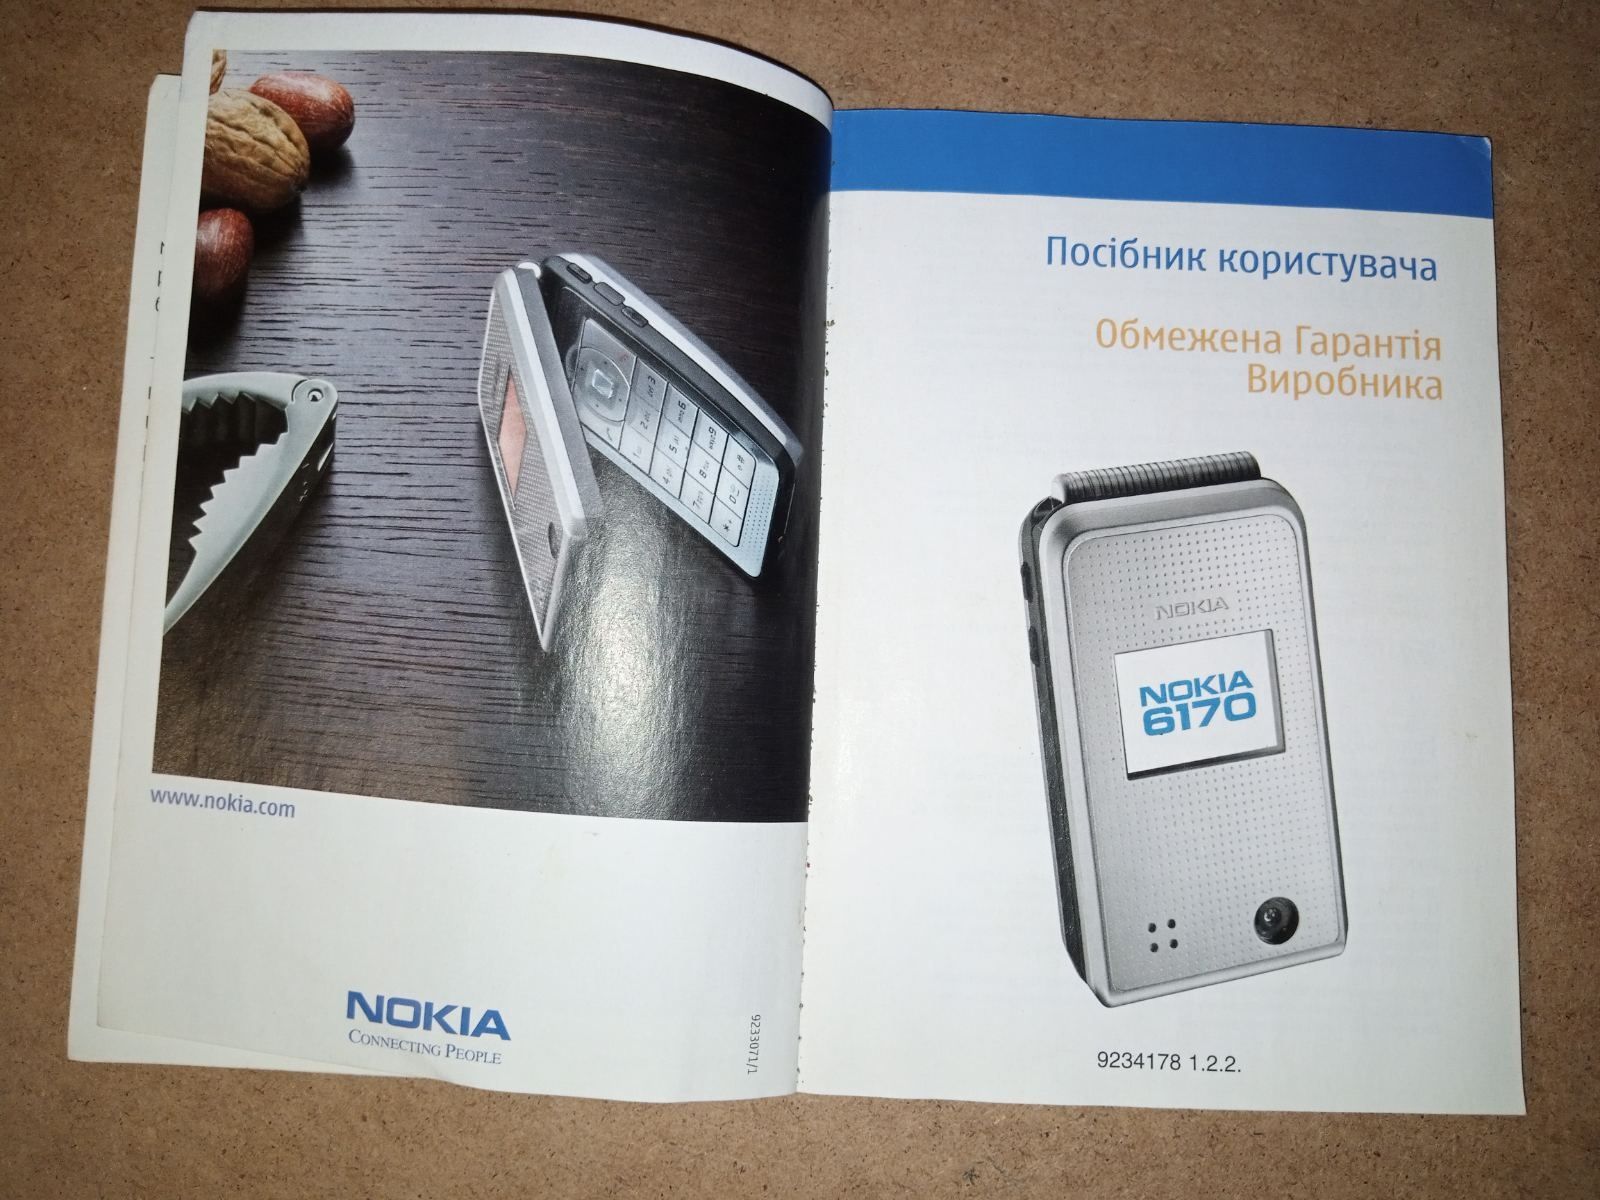 Аксесуари:Інструкція користувача"Nokia 6170".